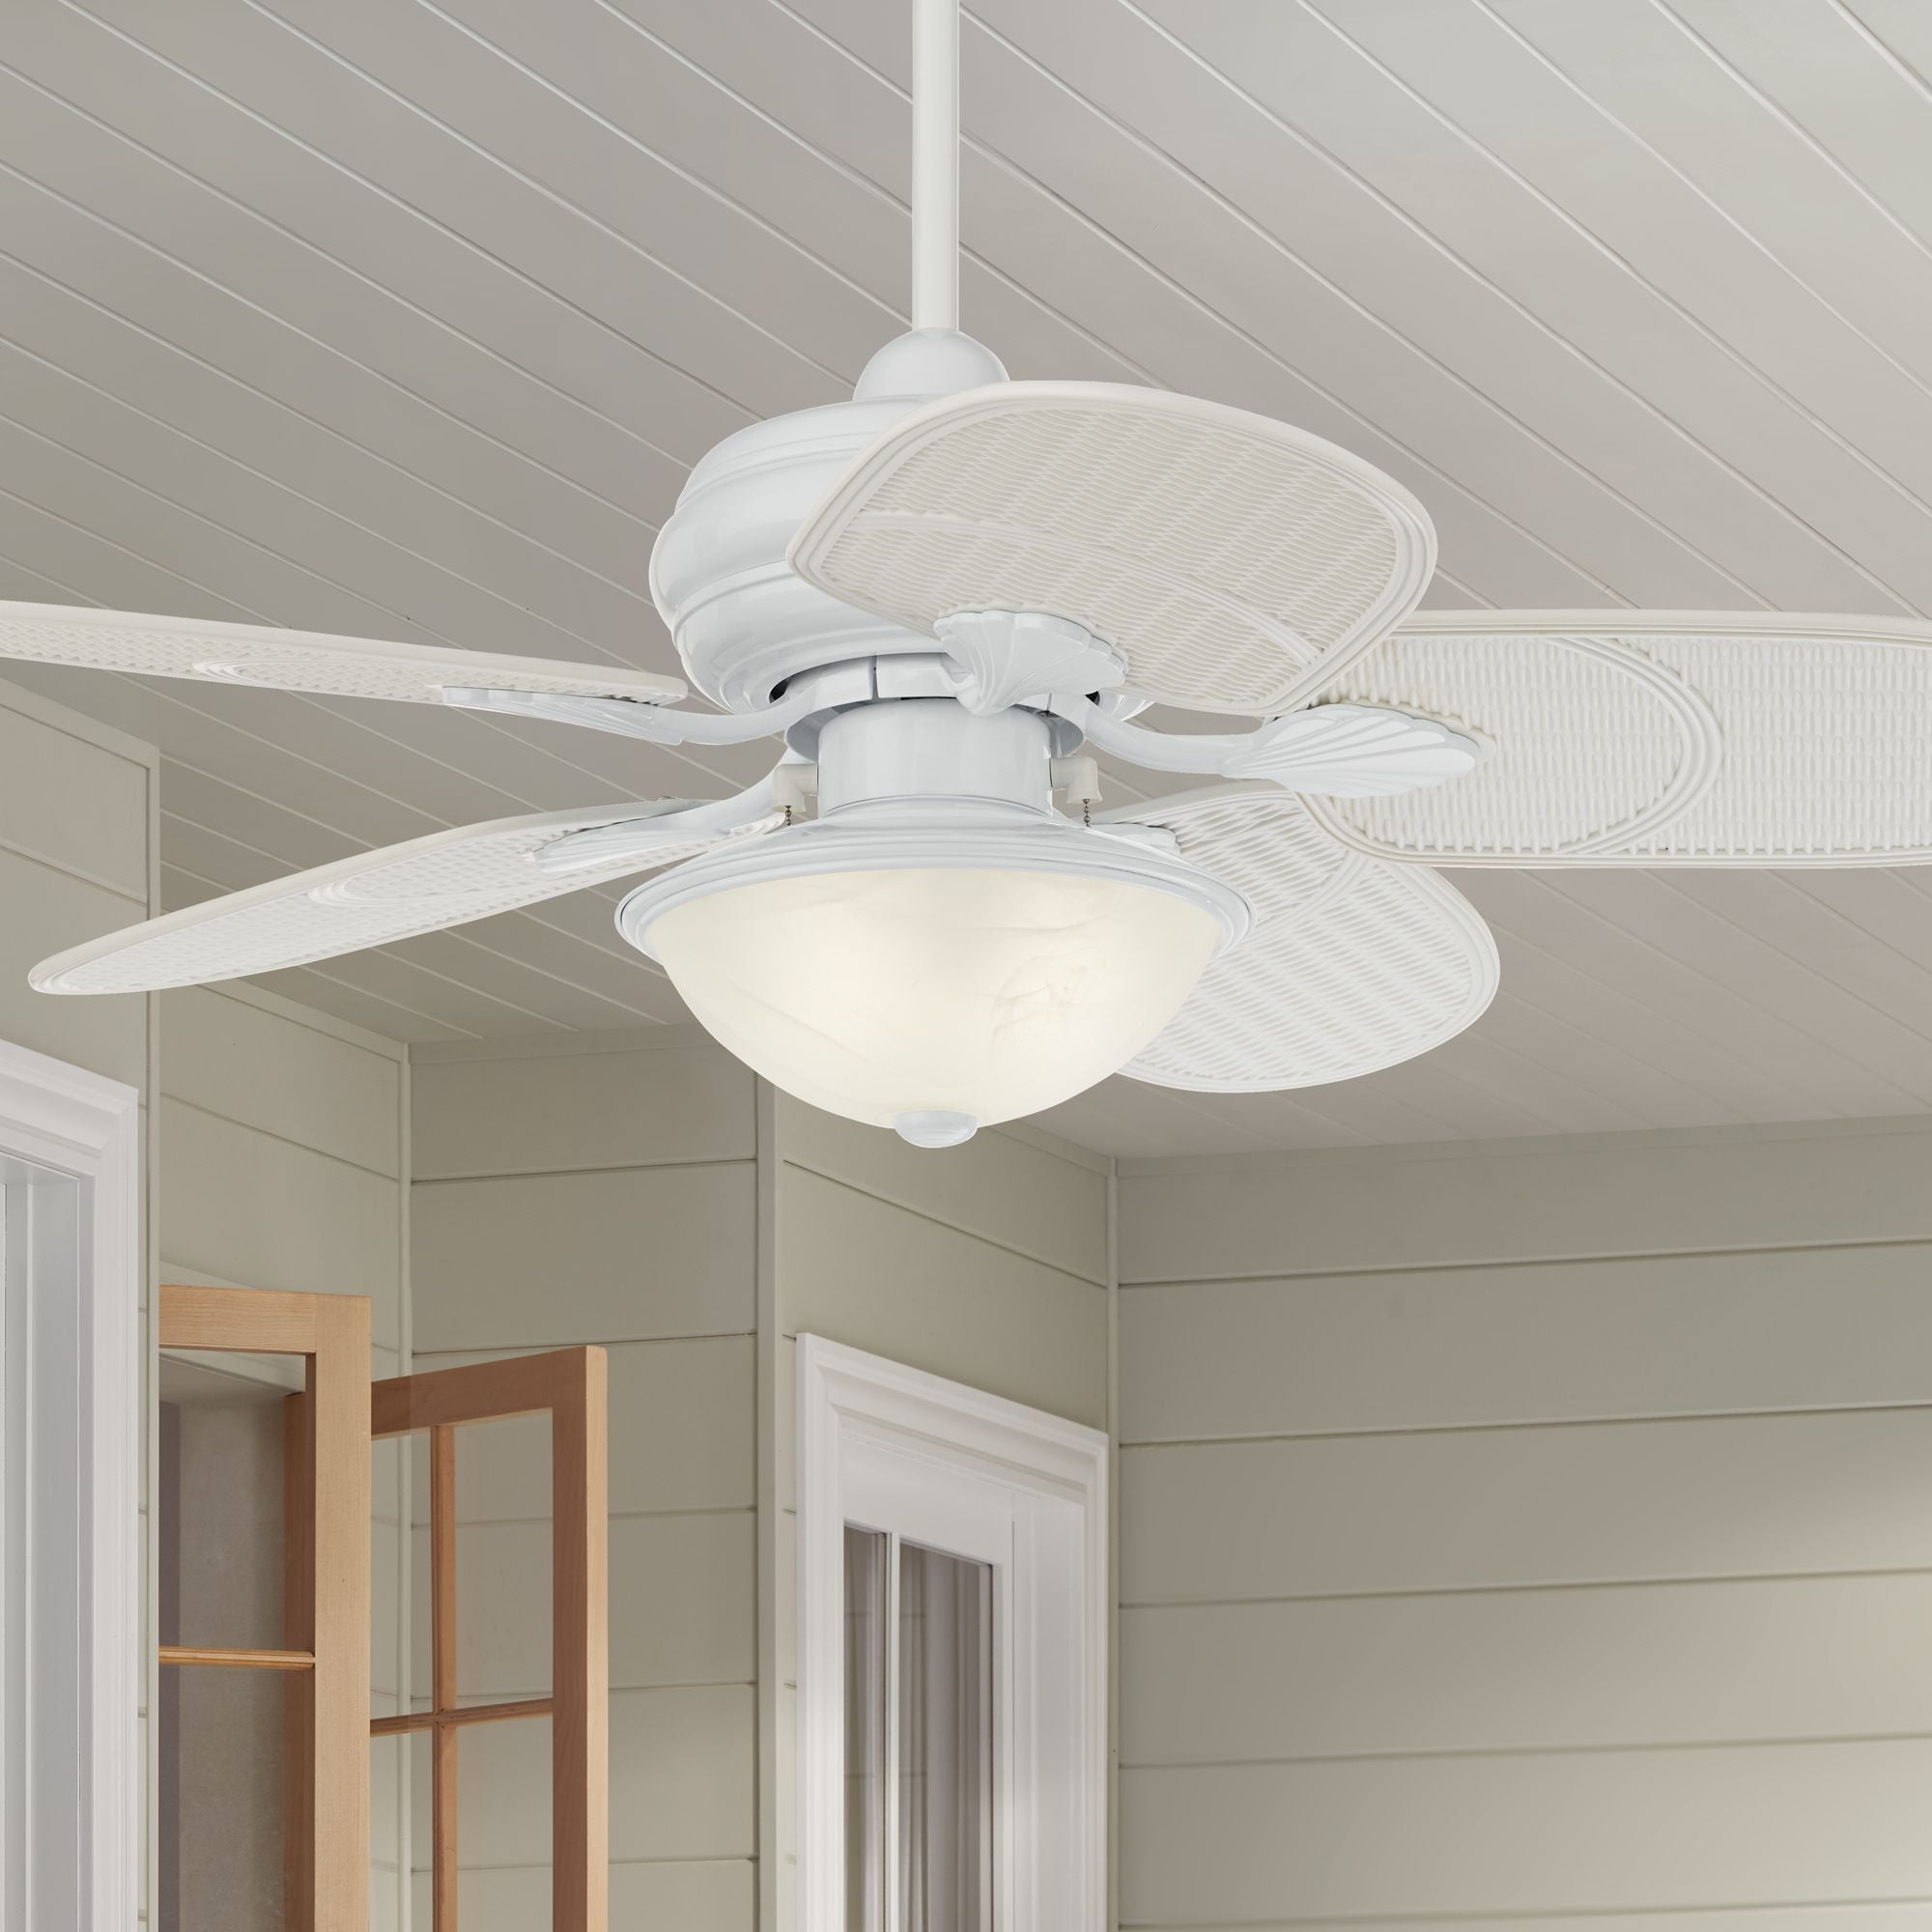 New 52" Rattan Oil-Rubbed Bronze Damp Rated Outdoor Indoor Ceiling Fan Wet 